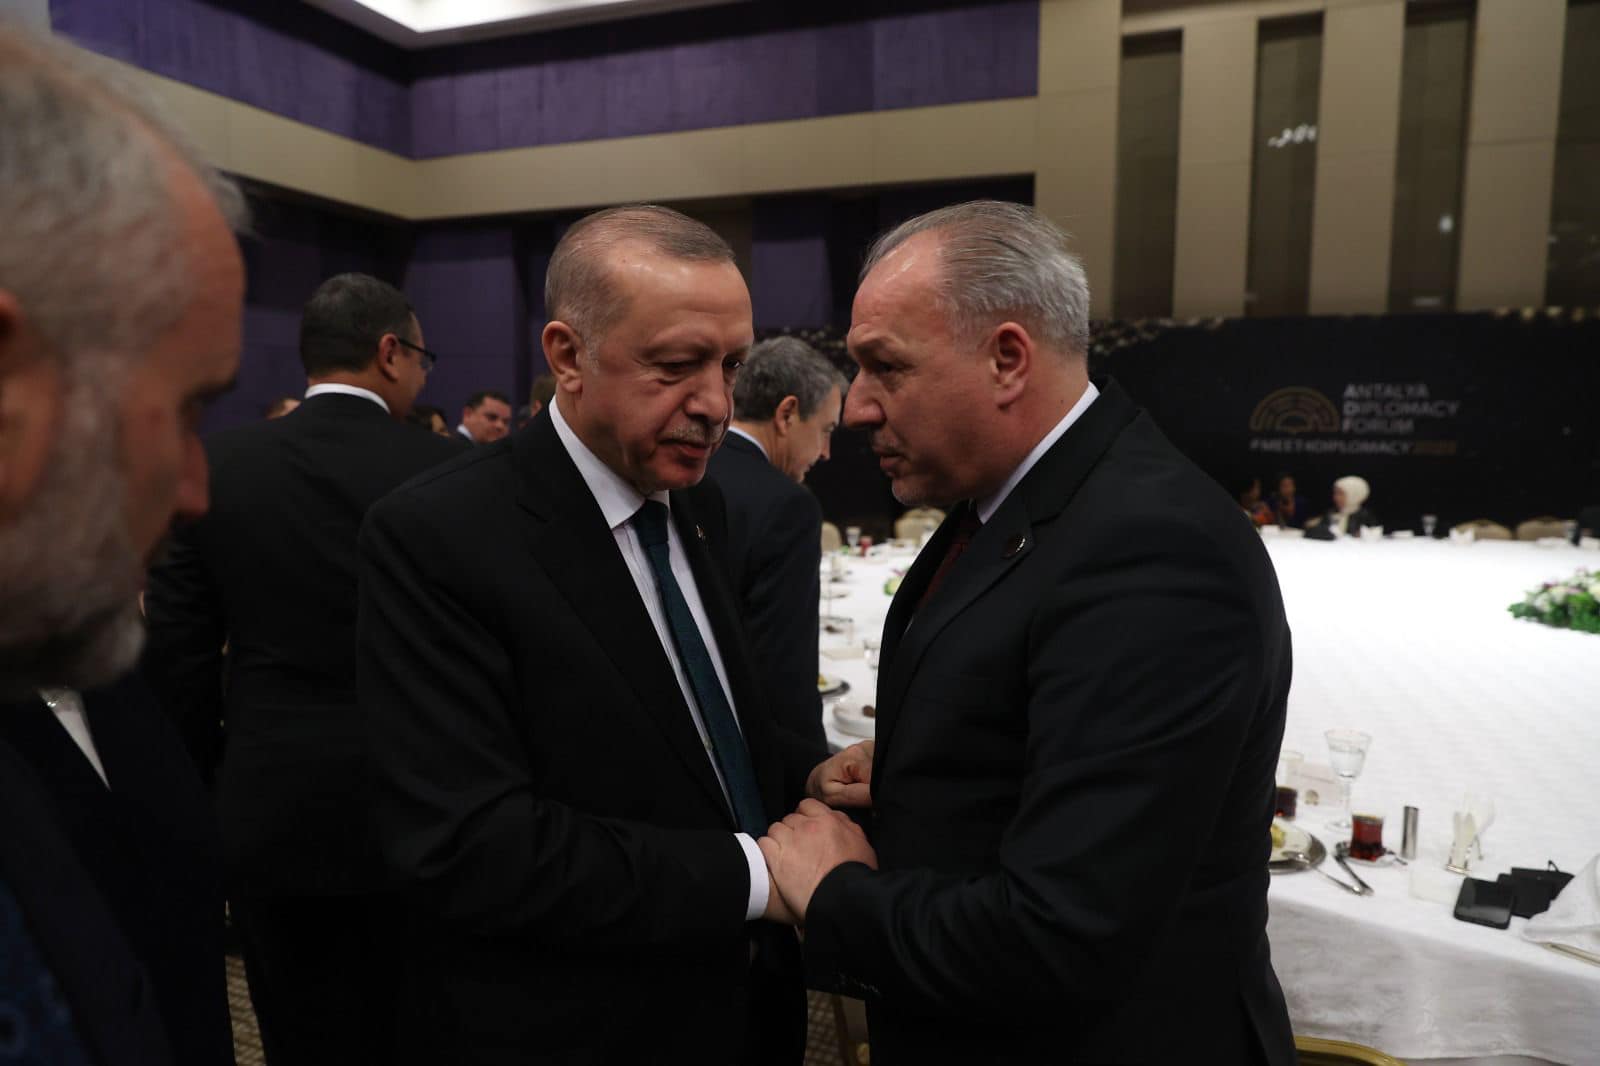 Ministri i Zhvillimit Rajonal z. Fikrim Damka u takua me Presidentin e Republikës së Turqisë z. Recep Tayyip Erdoğan